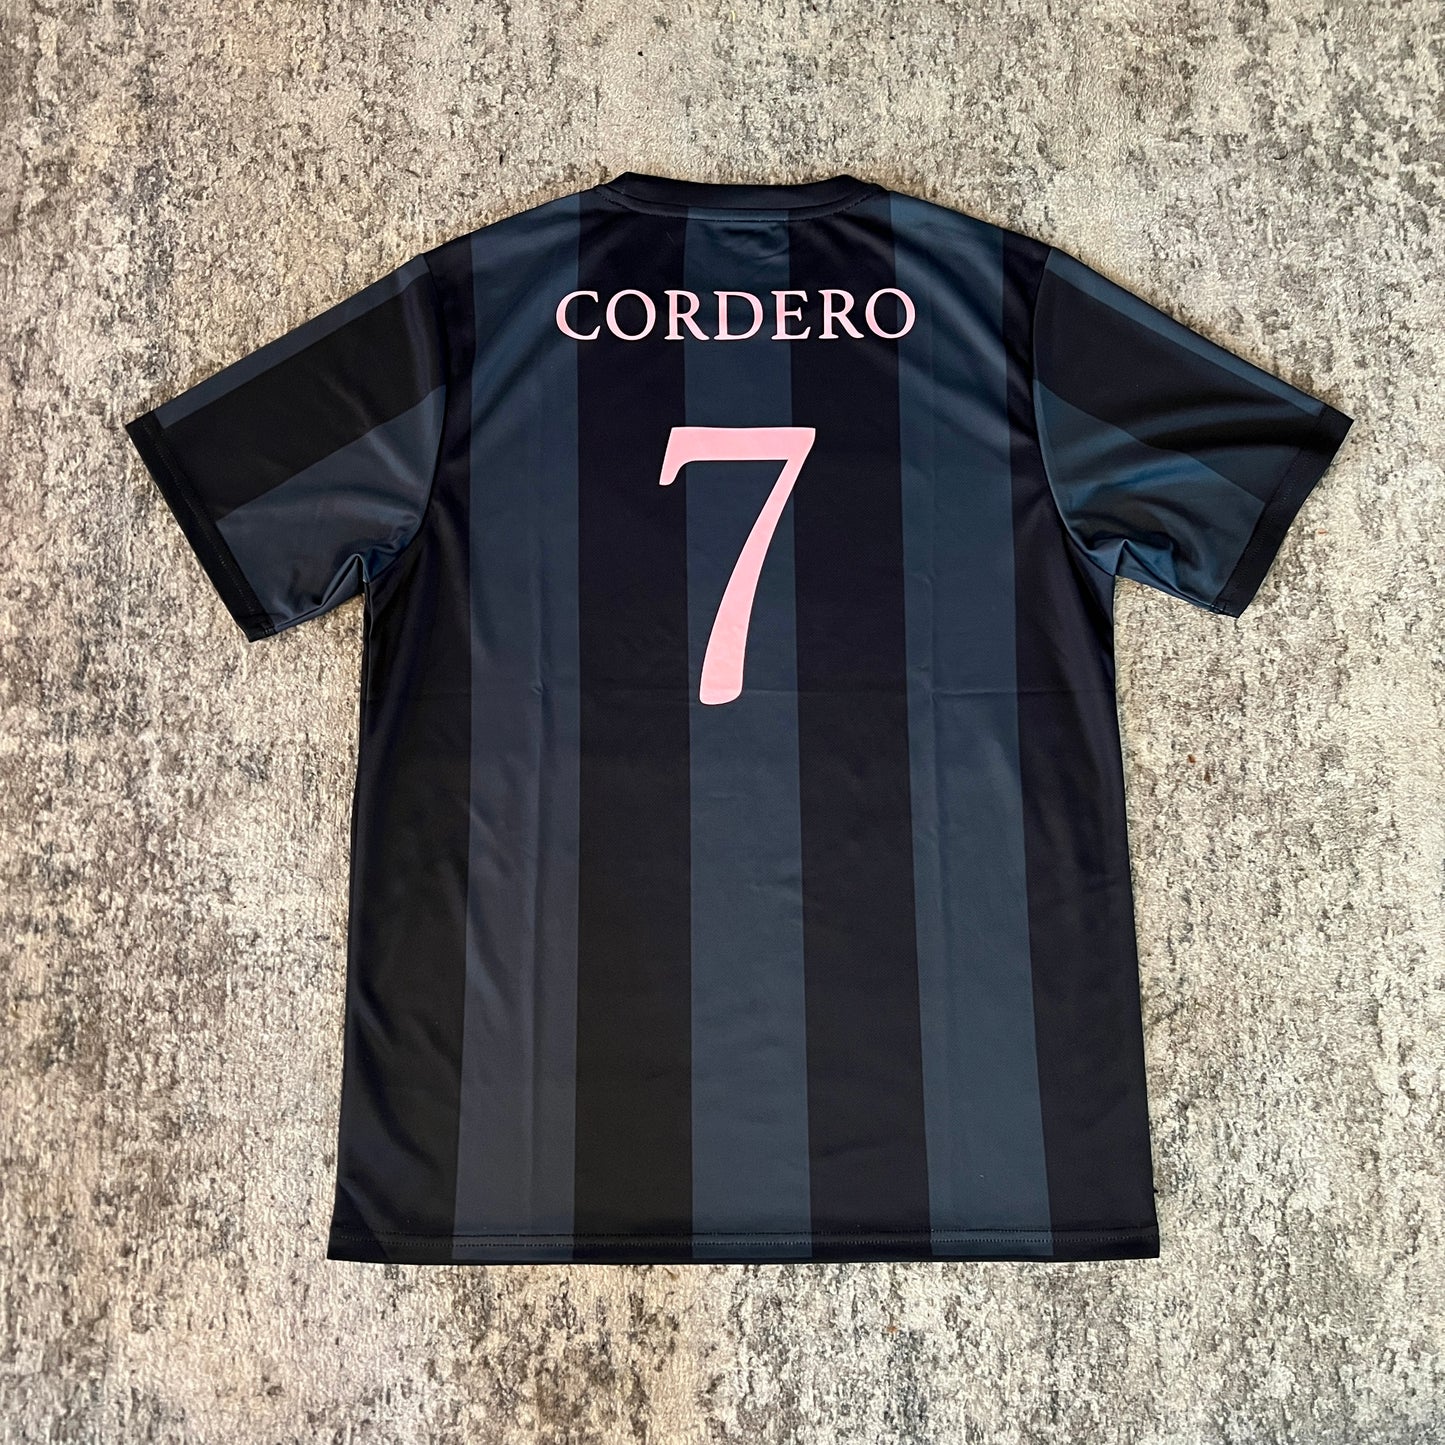 Cordero Futbol Jersey (Blk)